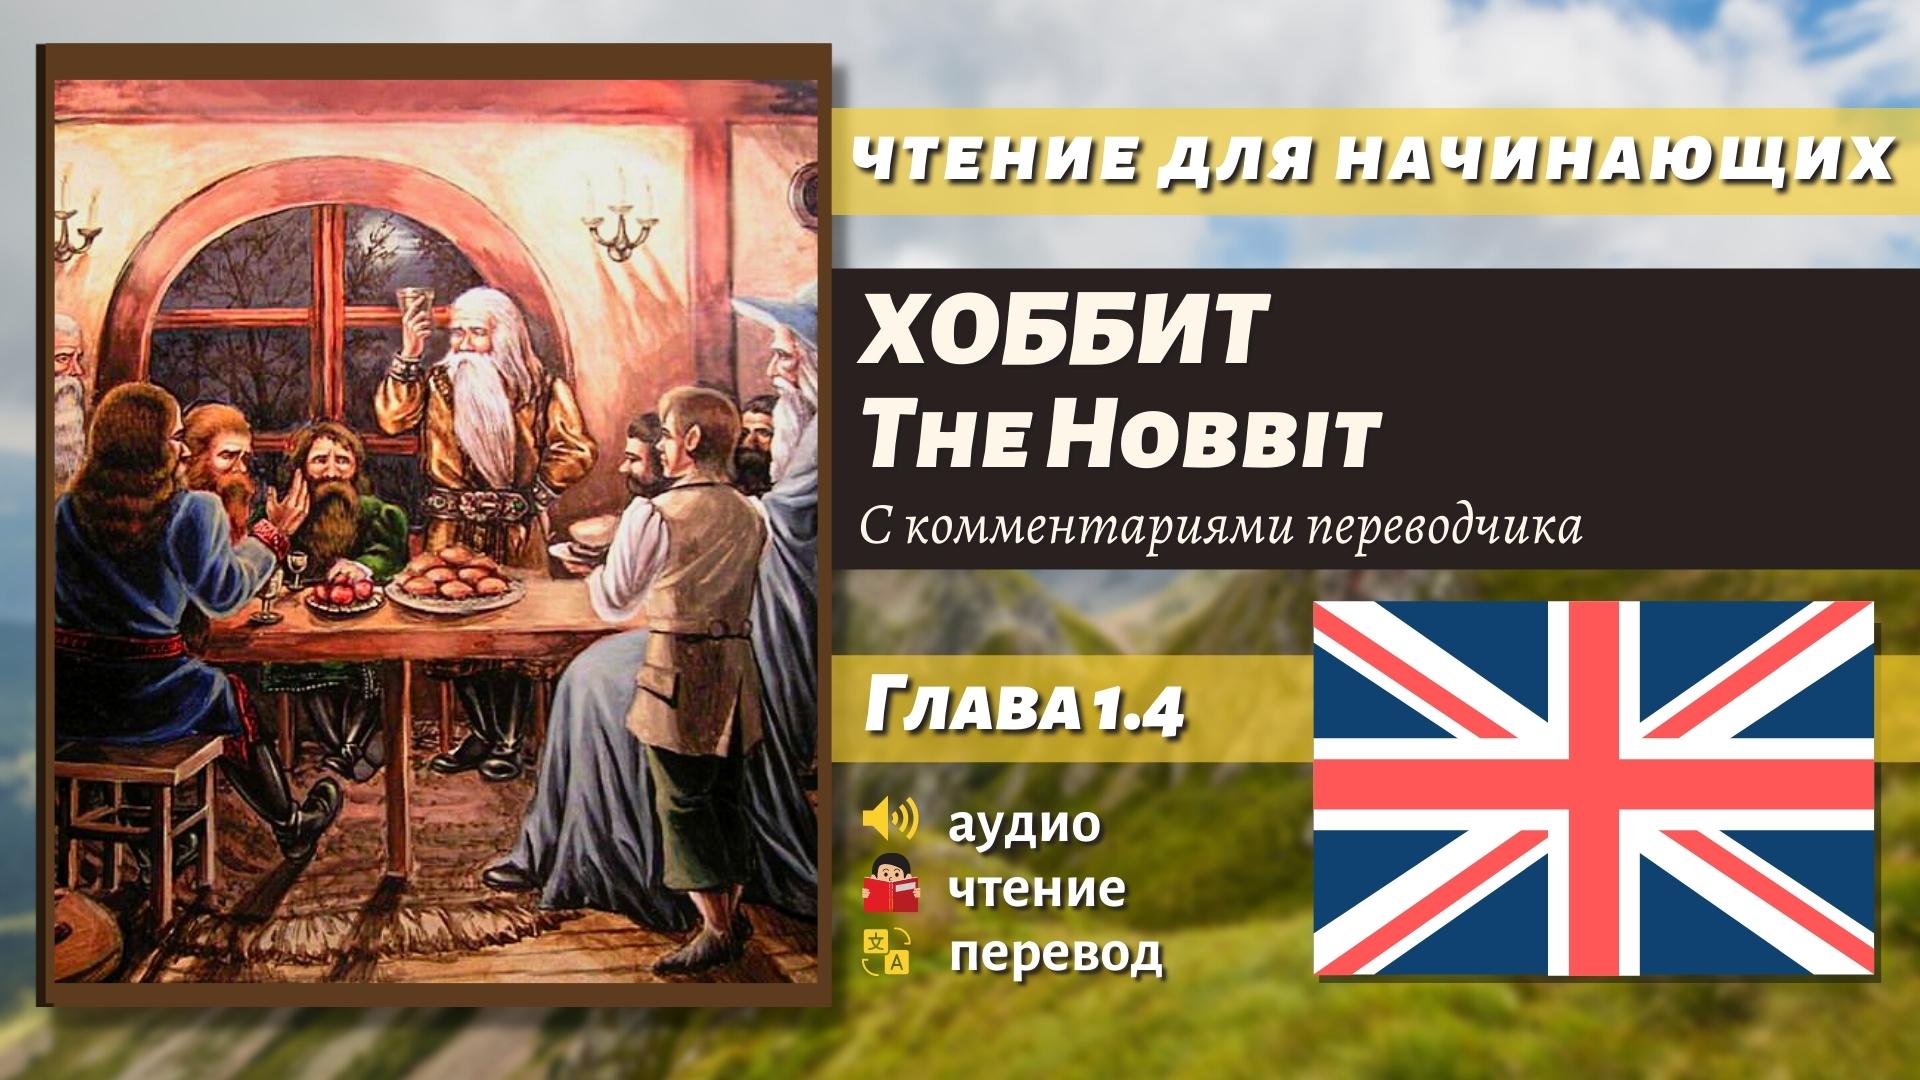 ЧТЕНИЕ НА АНГЛИЙСКОМ - The Hobbit J. R. R. Tolkien глава 1.4